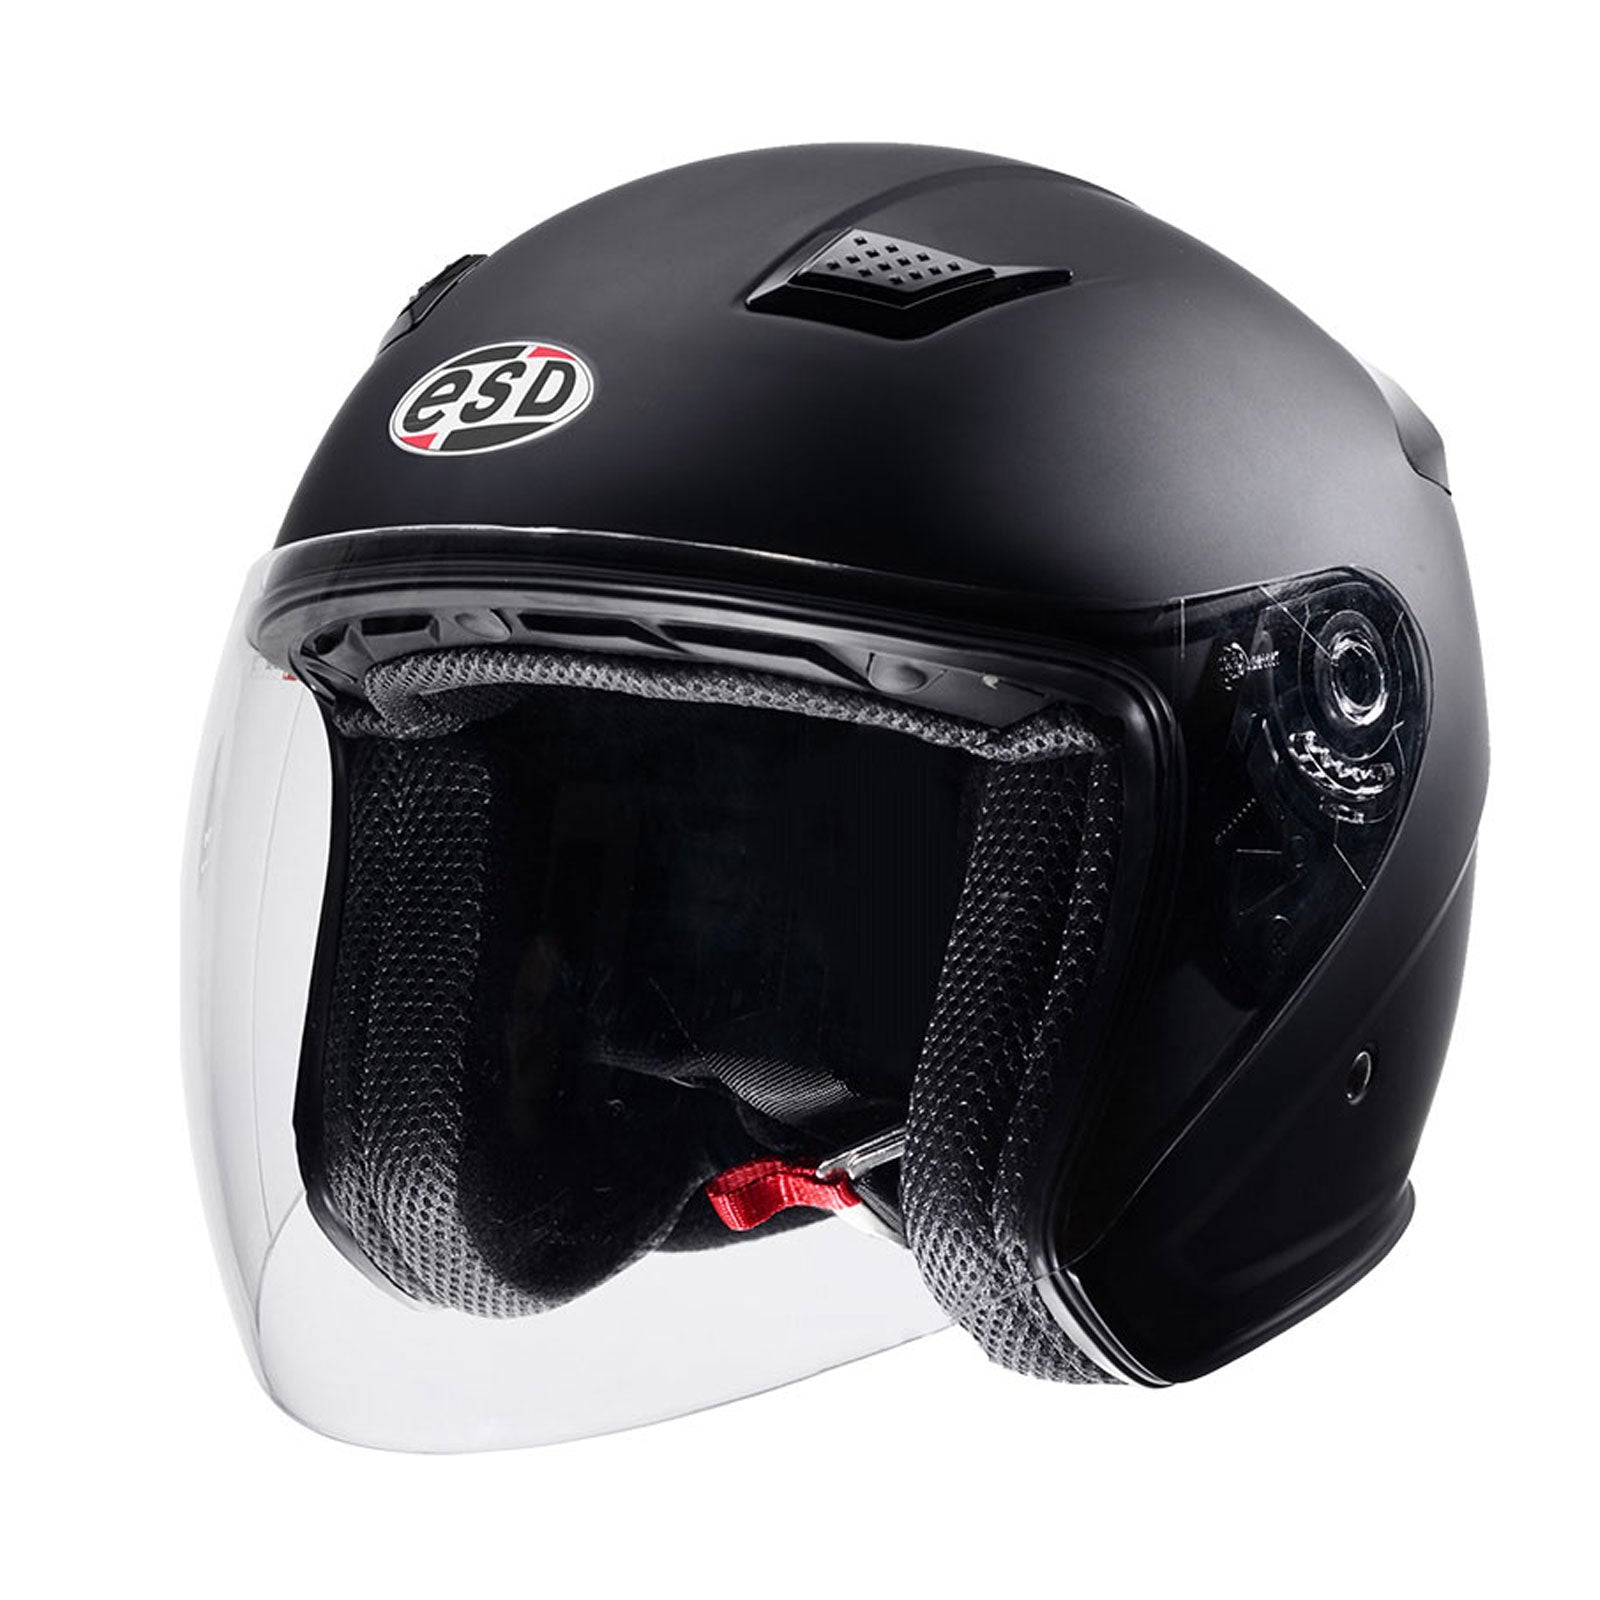 Eldorado Mens Motorcycle Helmet E10 open Face